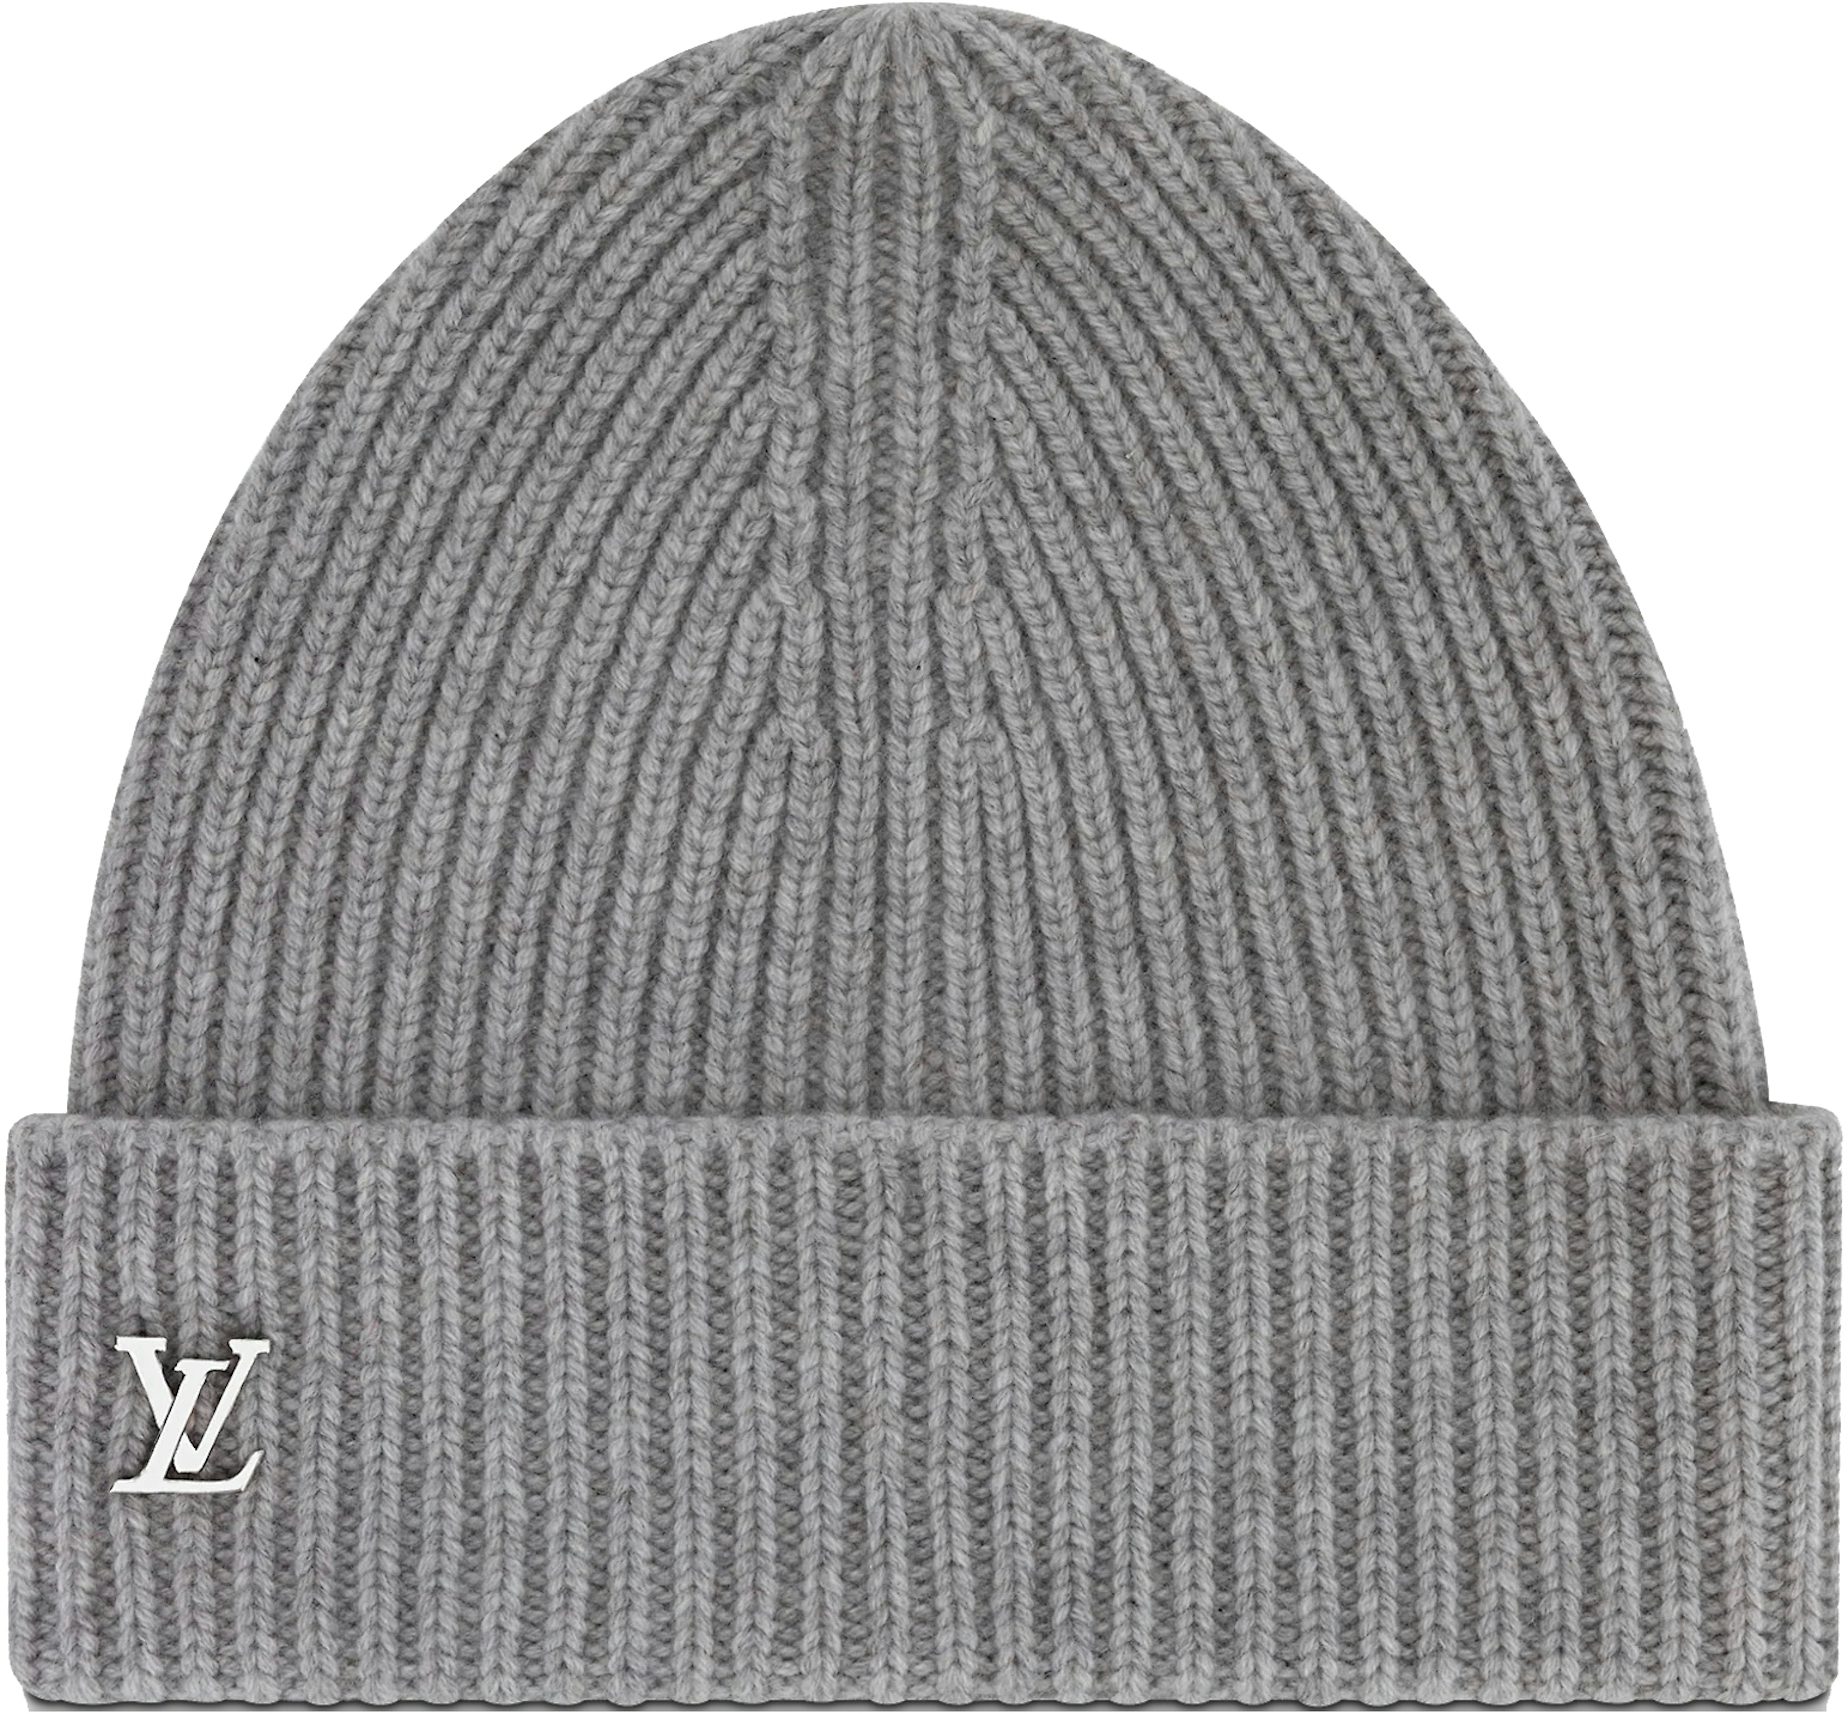 Buy Louis Vuitton Headwear Accessories - Color Gray - StockX